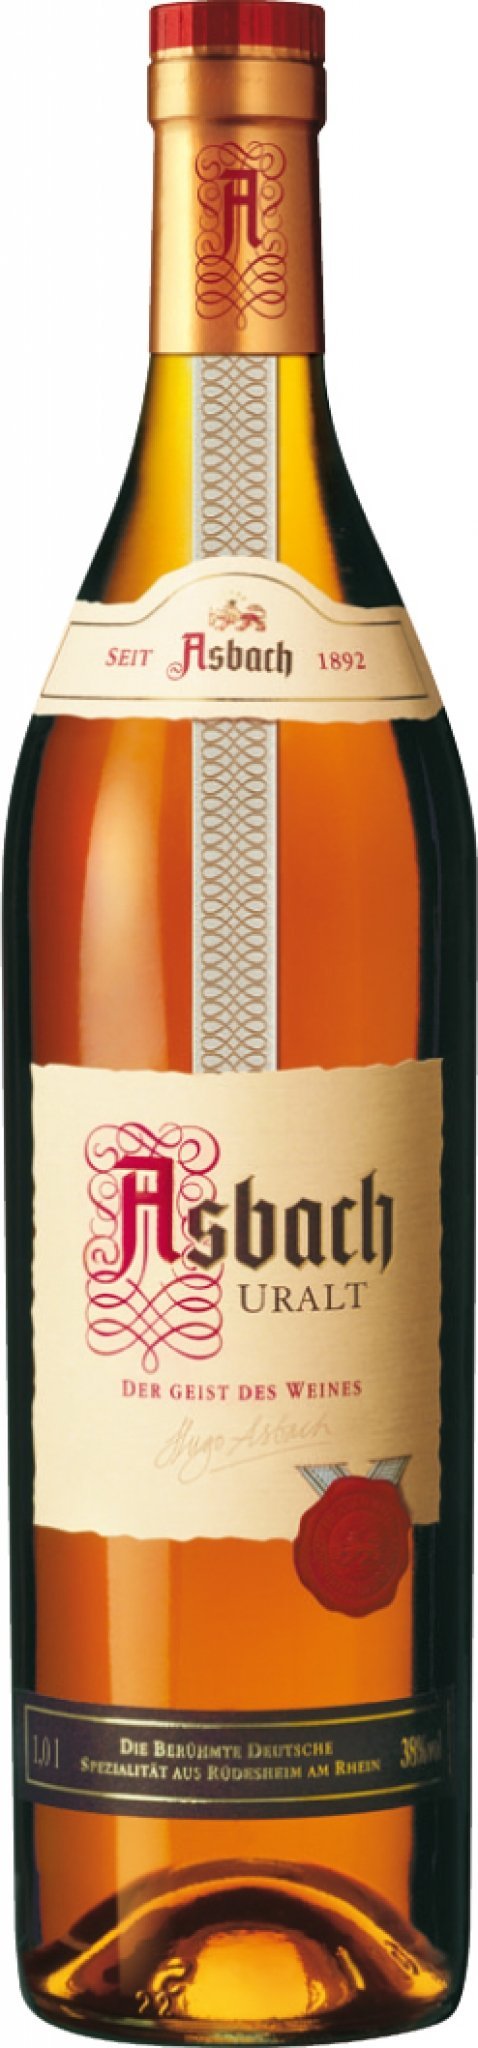 Asbach Uralt Brandy 3 Years 750ml-0